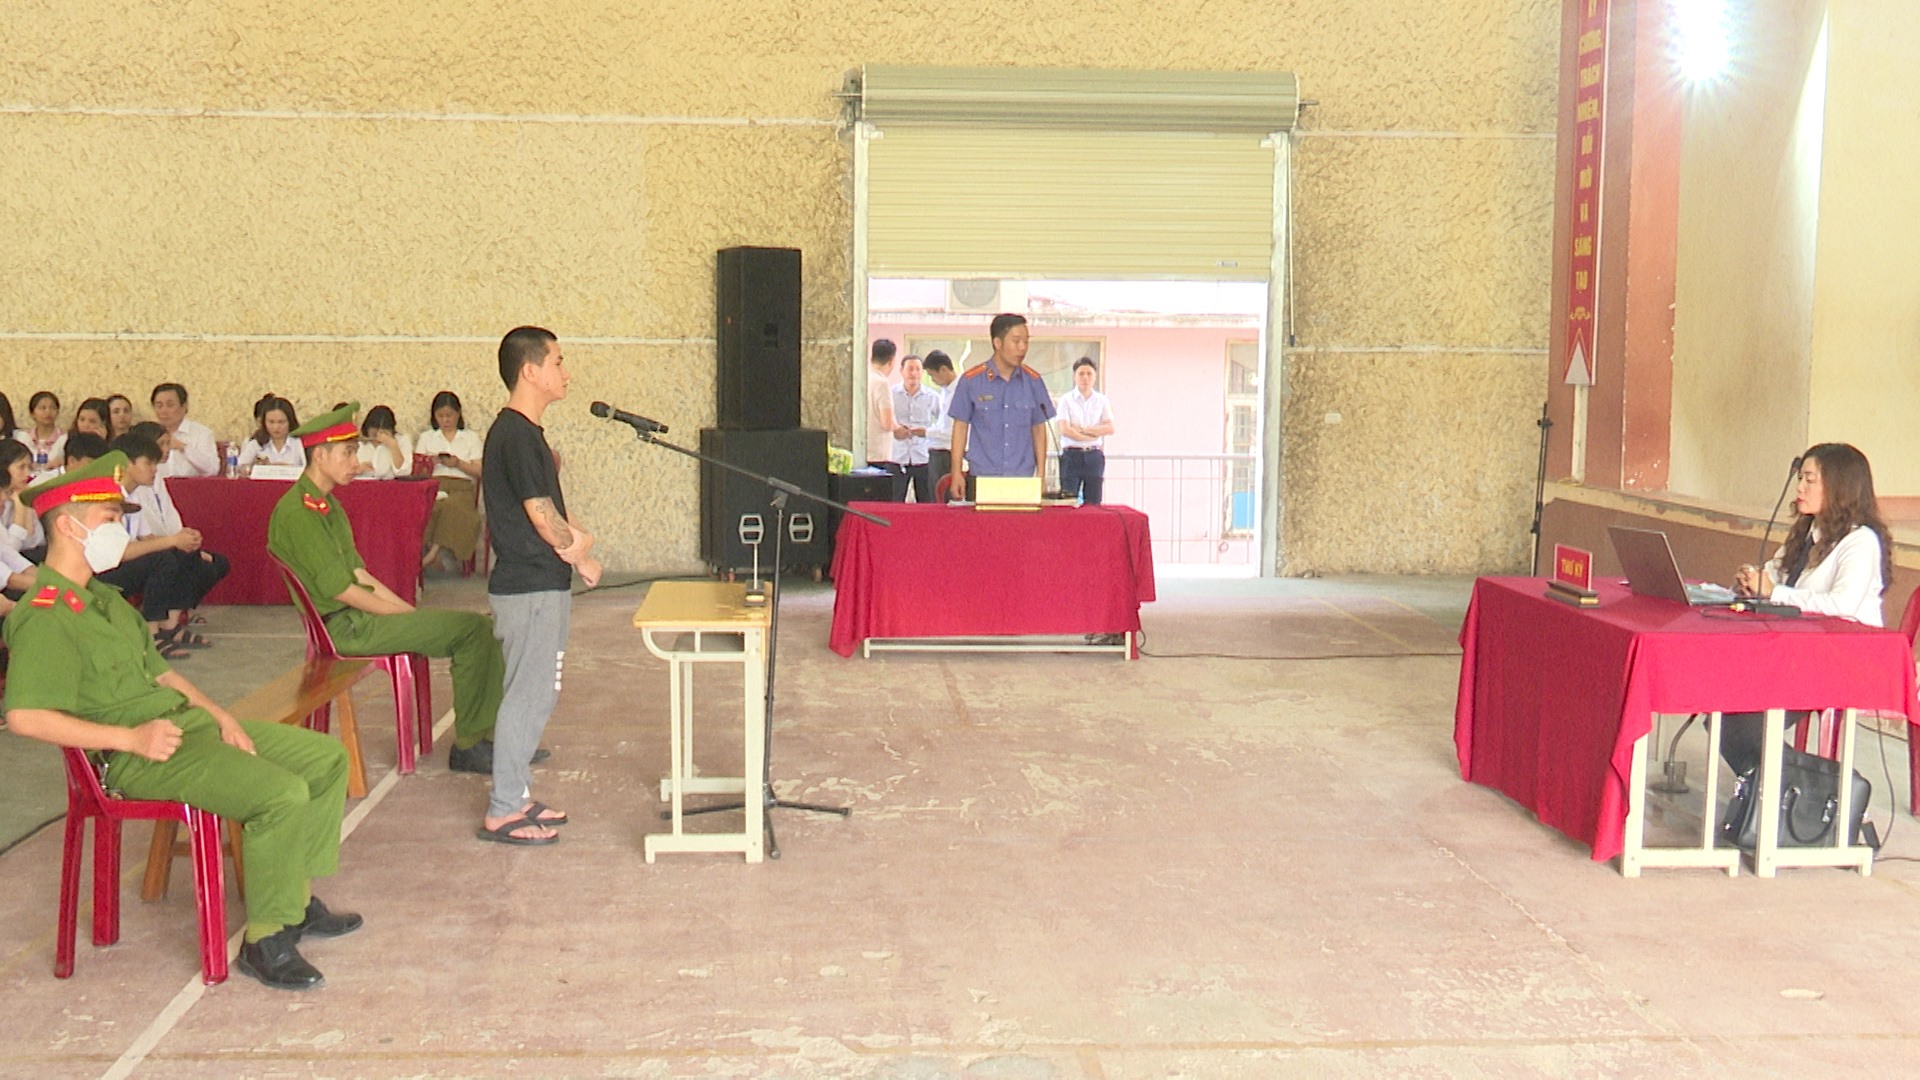 Phiên tòa lưu động được tổ chức tại Trường THPT Lê Lợi nhằm góp phần tuyên truyền, giáo dục phòng chống ma túy cho học sinh-Ảnh: Huyền Nhung